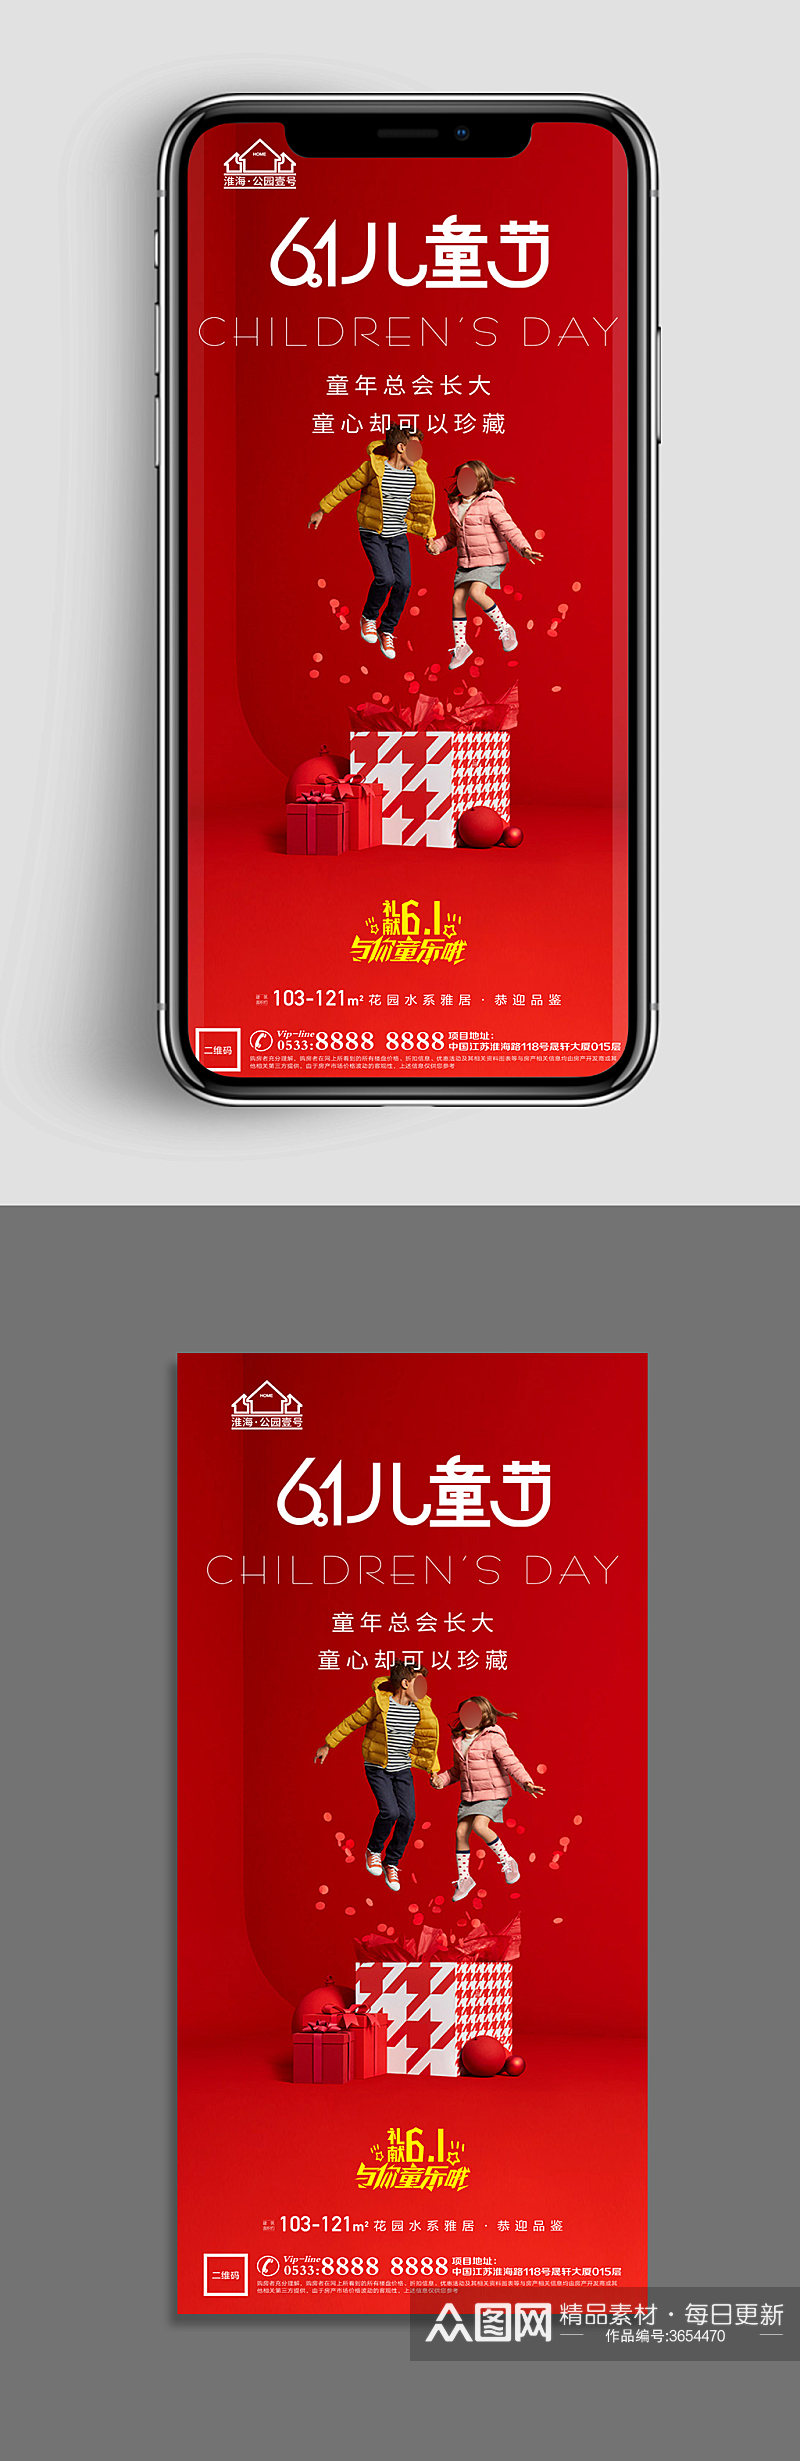 红色地产儿童节宣传广告素材